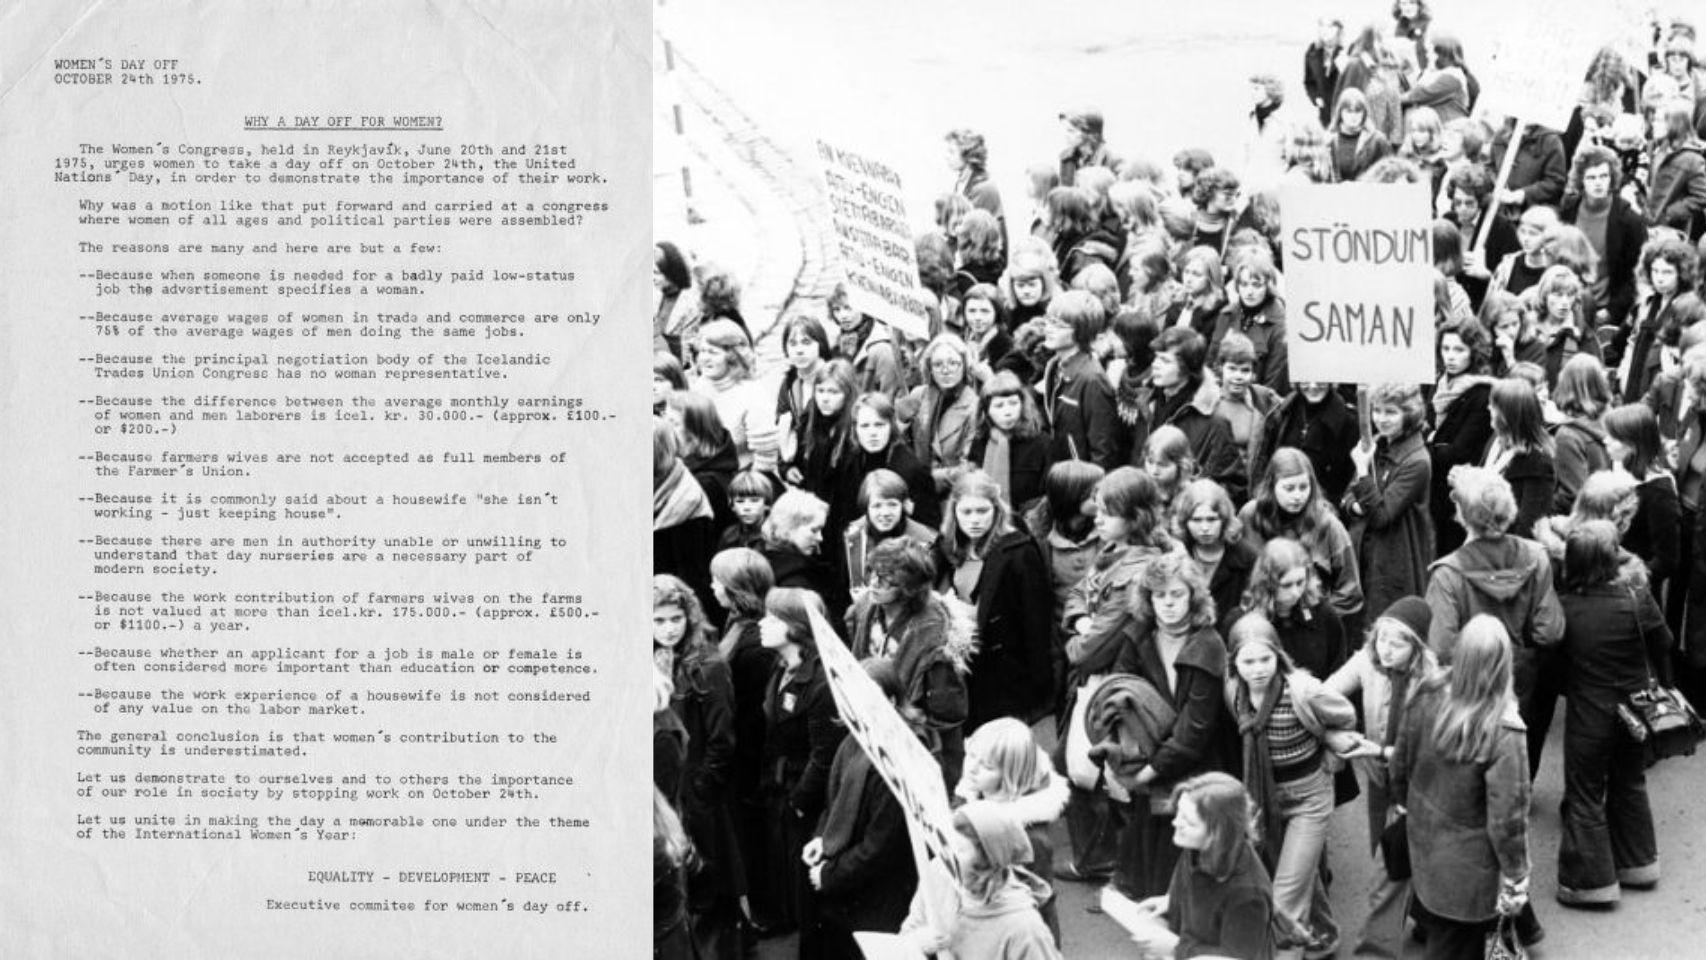 Manifiesto y fotografía de la protesta en 1975.